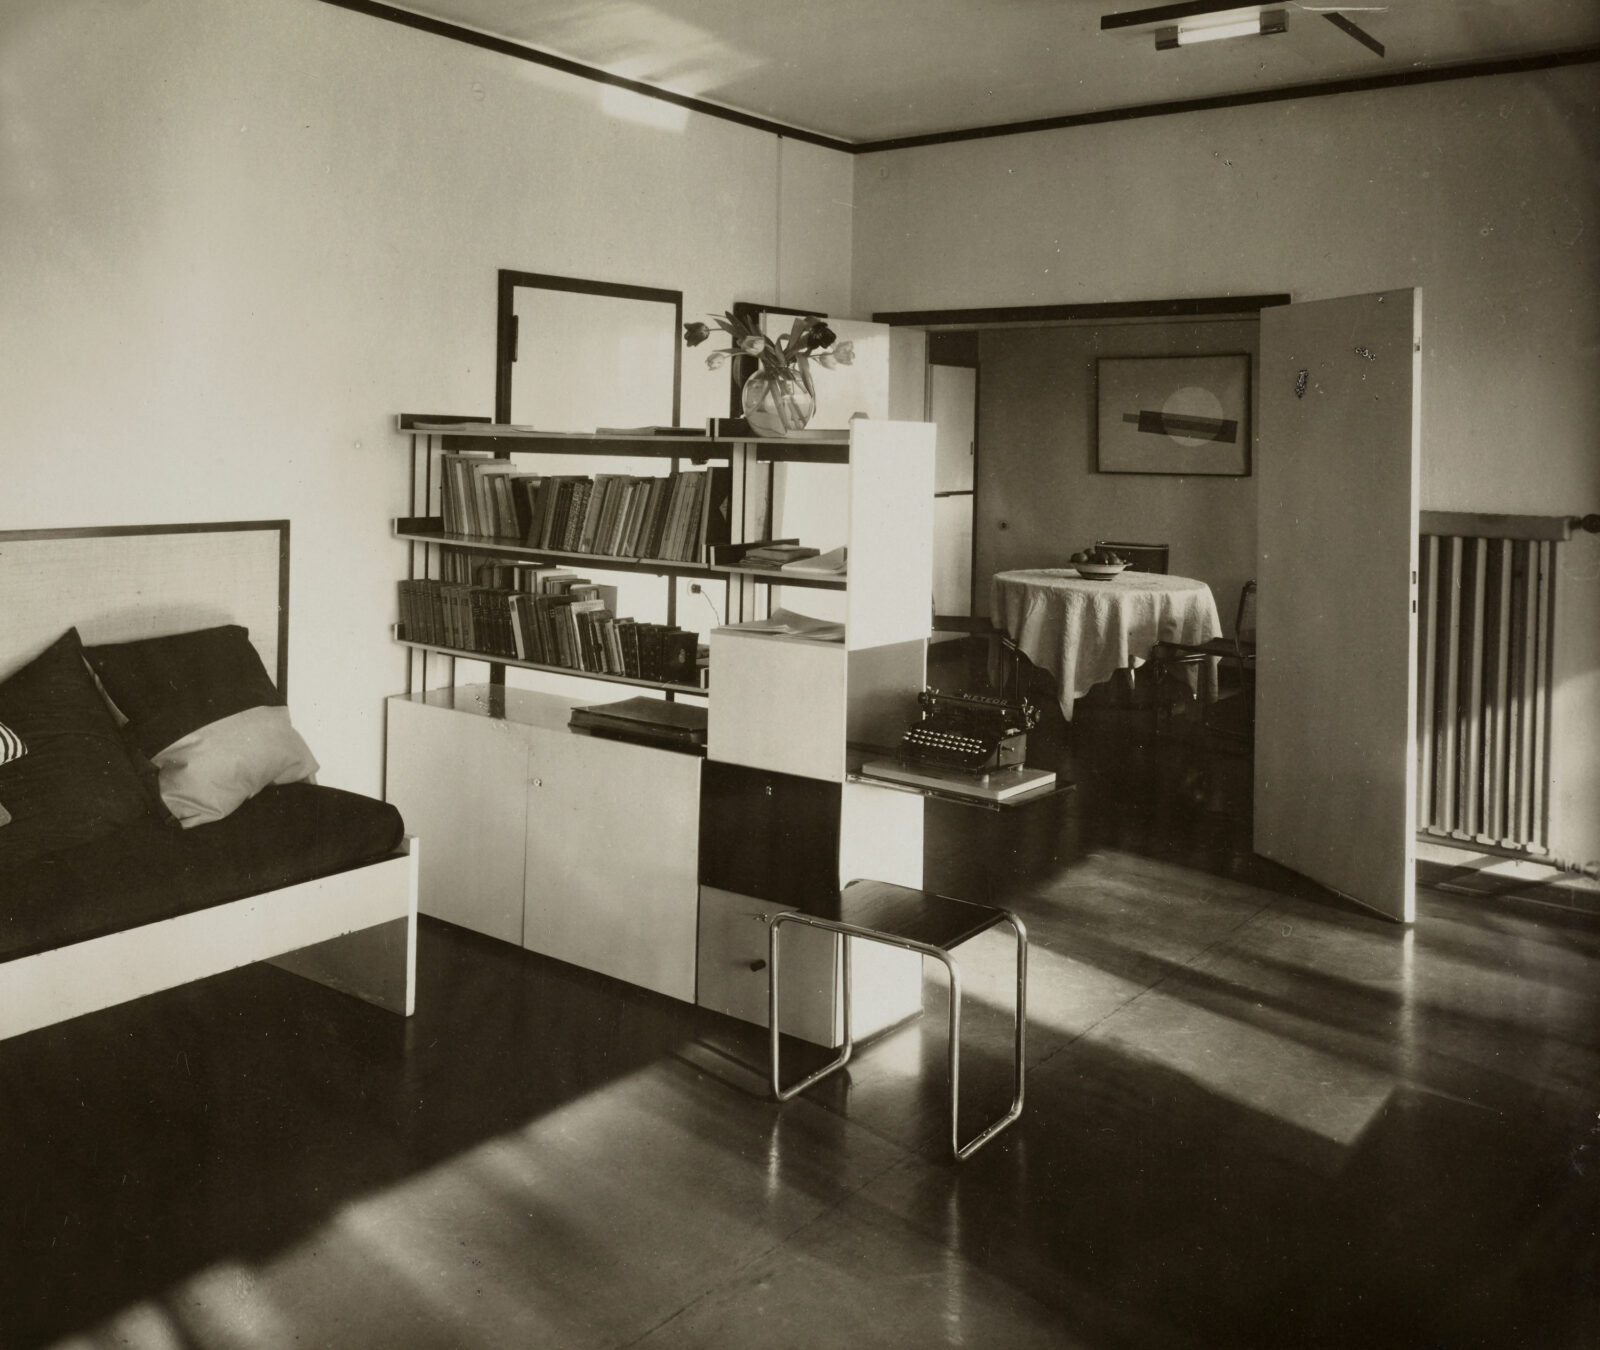 Ein modernes Bücherregal mit extra Ausschub für eine Schreibmaschine ragt in das Wohnzimmer des Meisterhauses Mohly hinein. Daneben steht ein Stahlrohrhocker. Im Hintergrund die geöffnete Tür zum Esszimmer. Auf dem Tisch steht eine Obstschale. An der Wand hängt eine Grafik.